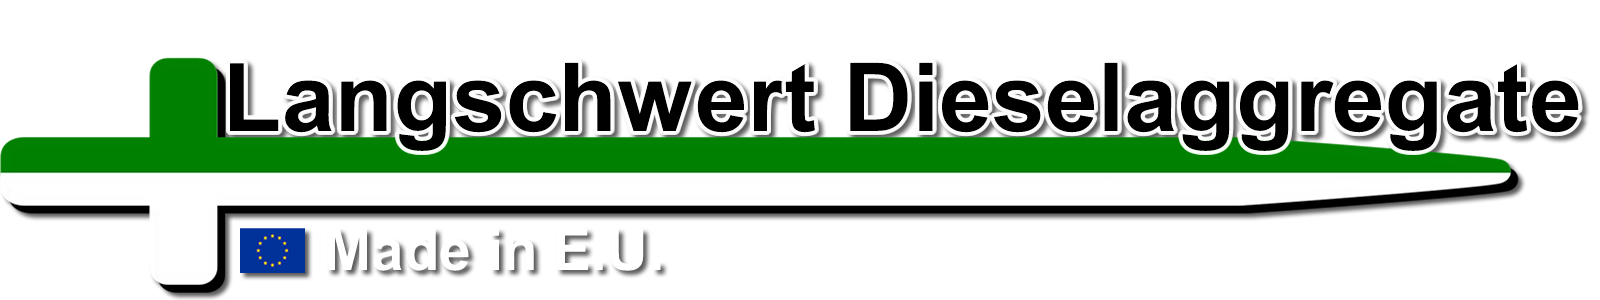 Logo Langschwert Dieselaggregate Notstrom